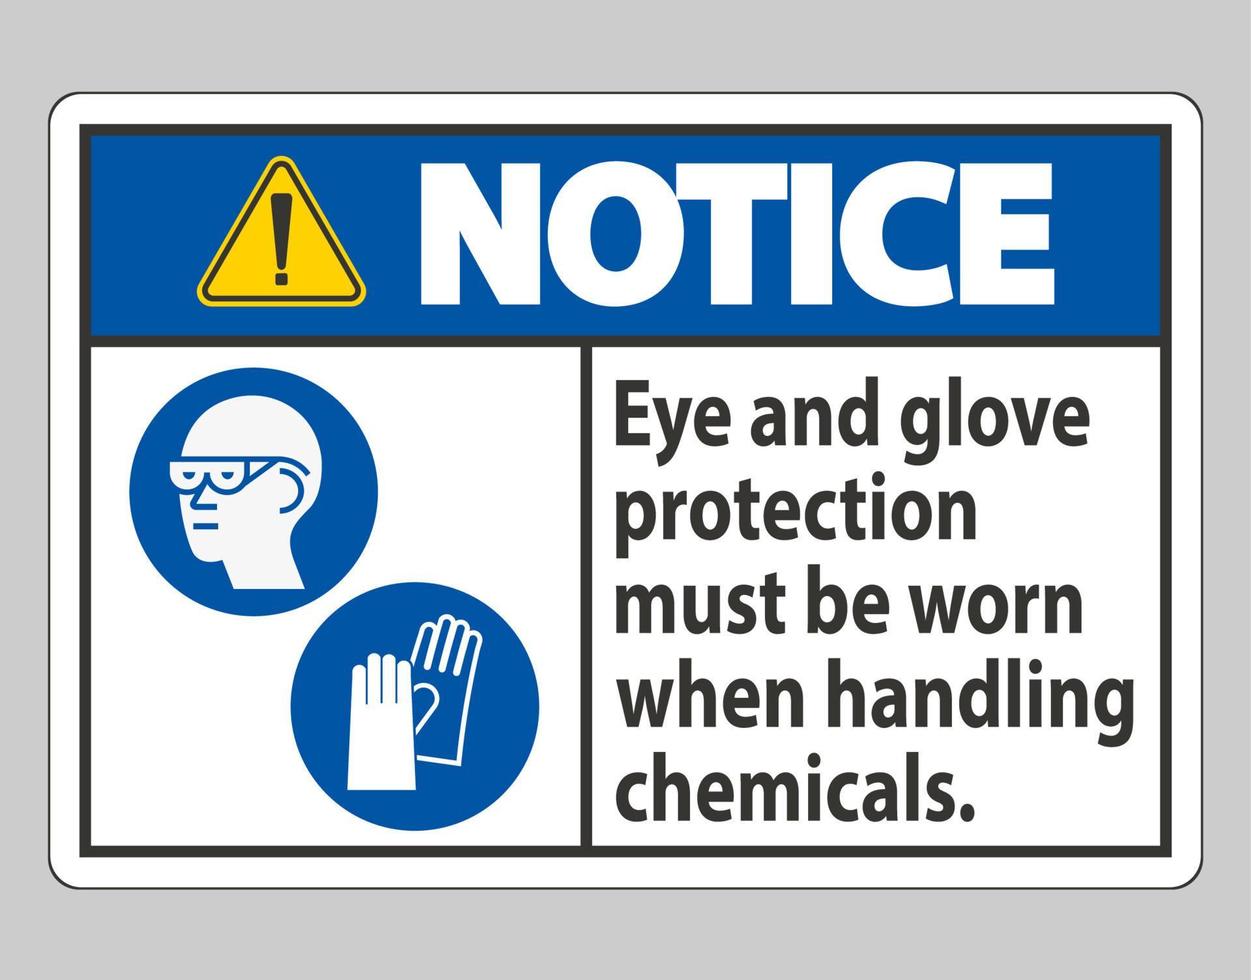 aviso sinal de proteção para os olhos e luvas deve ser usado ao manusear produtos químicos vetor